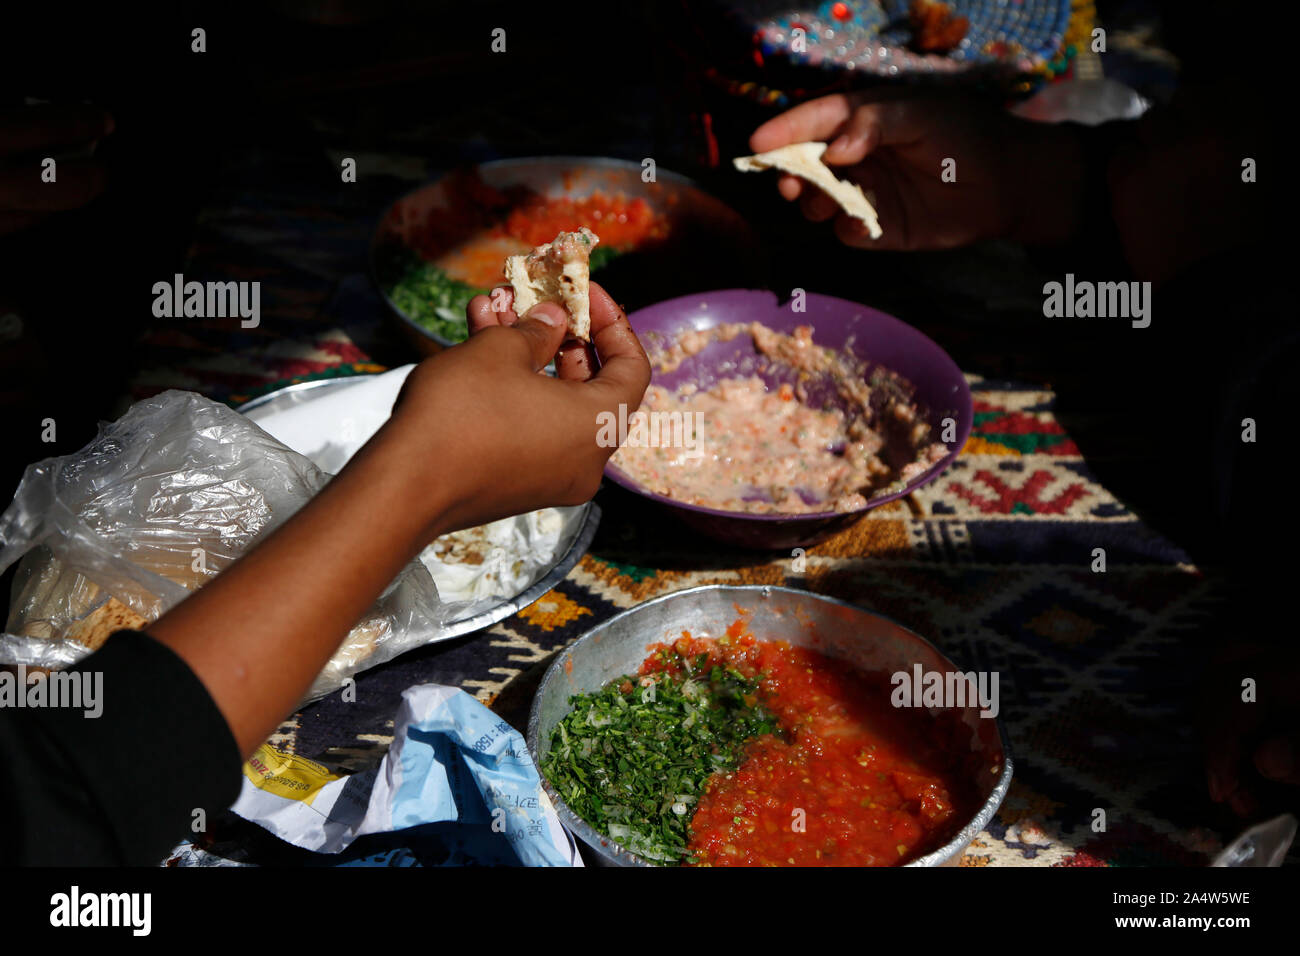 Sanaa. 16 Oct, 2019. Yemenitas tienen su desayuno en un restaurante en Sanaa, Yemen, 16 de octubre, 2019, el Día Mundial de la alimentación. El prolongado conflicto ha causado la peor crisis humanitaria mundial. Actualmente, unos 24 millones de yemenitas, o el 80 por ciento de la población, necesitan asistencia humanitaria y protección, con unos 20 millones carecen de seguridad alimentaria, según estadísticas previas de la ONU. Crédito: Mohammed Mohammed/Xinhua/Alamy Live News Foto de stock